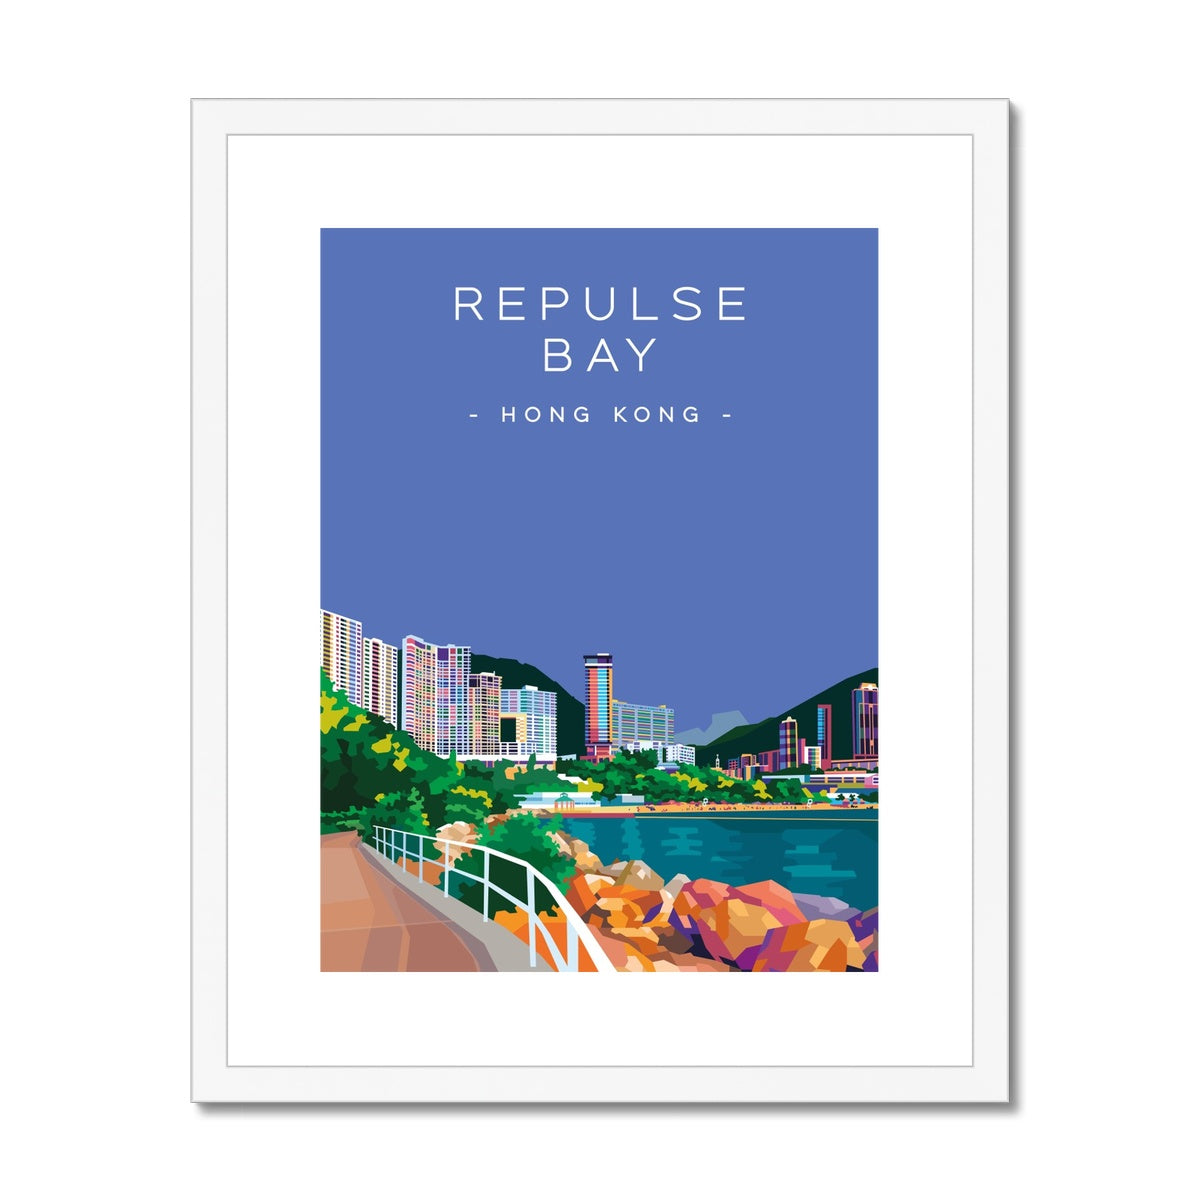 Hong Kong Travel - Repulse Bay Framed & Mounted Print